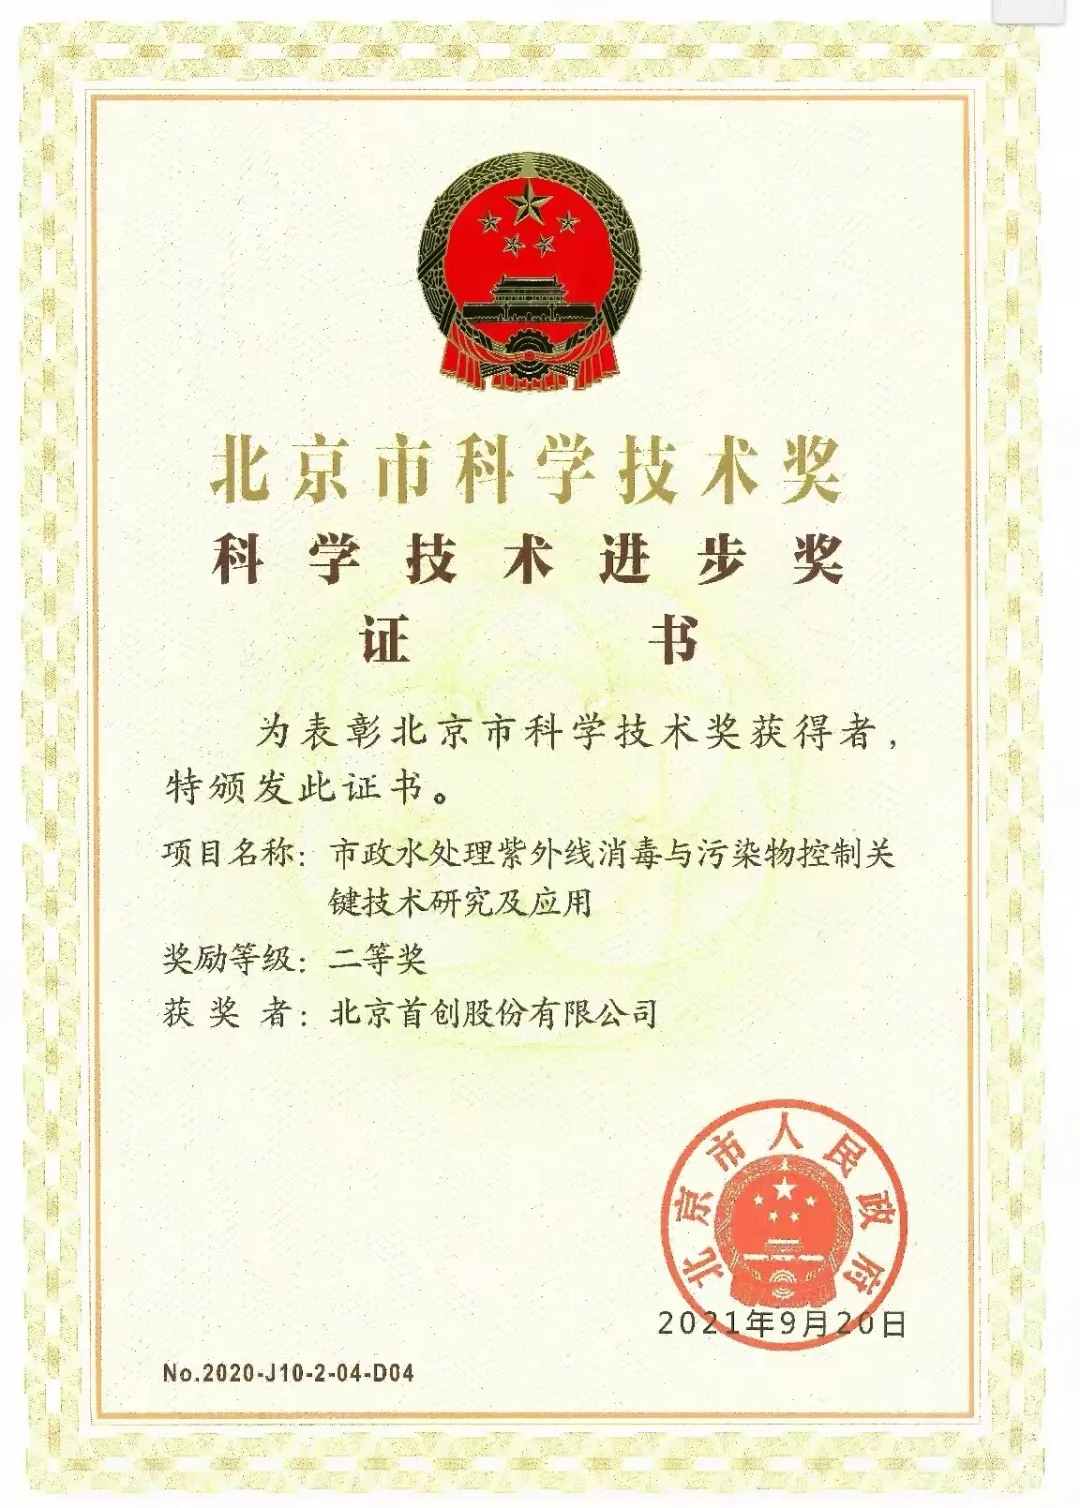 环保集团获北京市“科学技术进步奖二等奖” 